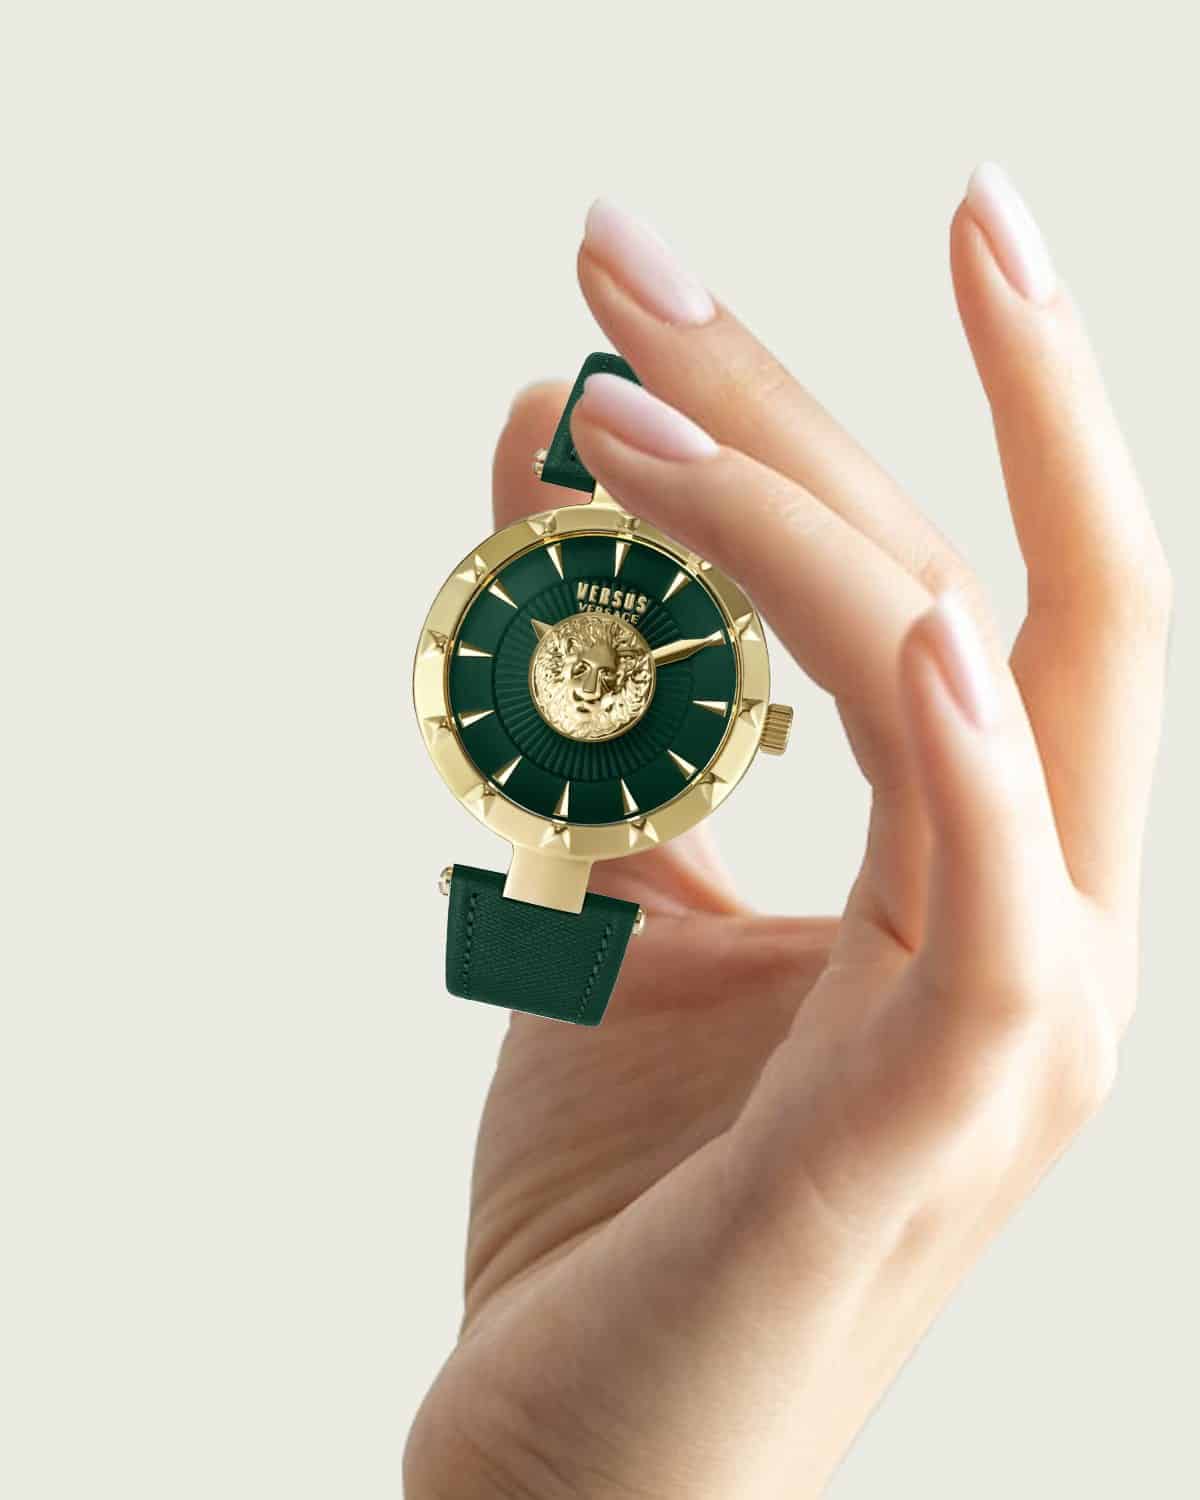 Đồng hồ Versus sở hữu thiết kế đầy mới mẻ, sáng tạo.